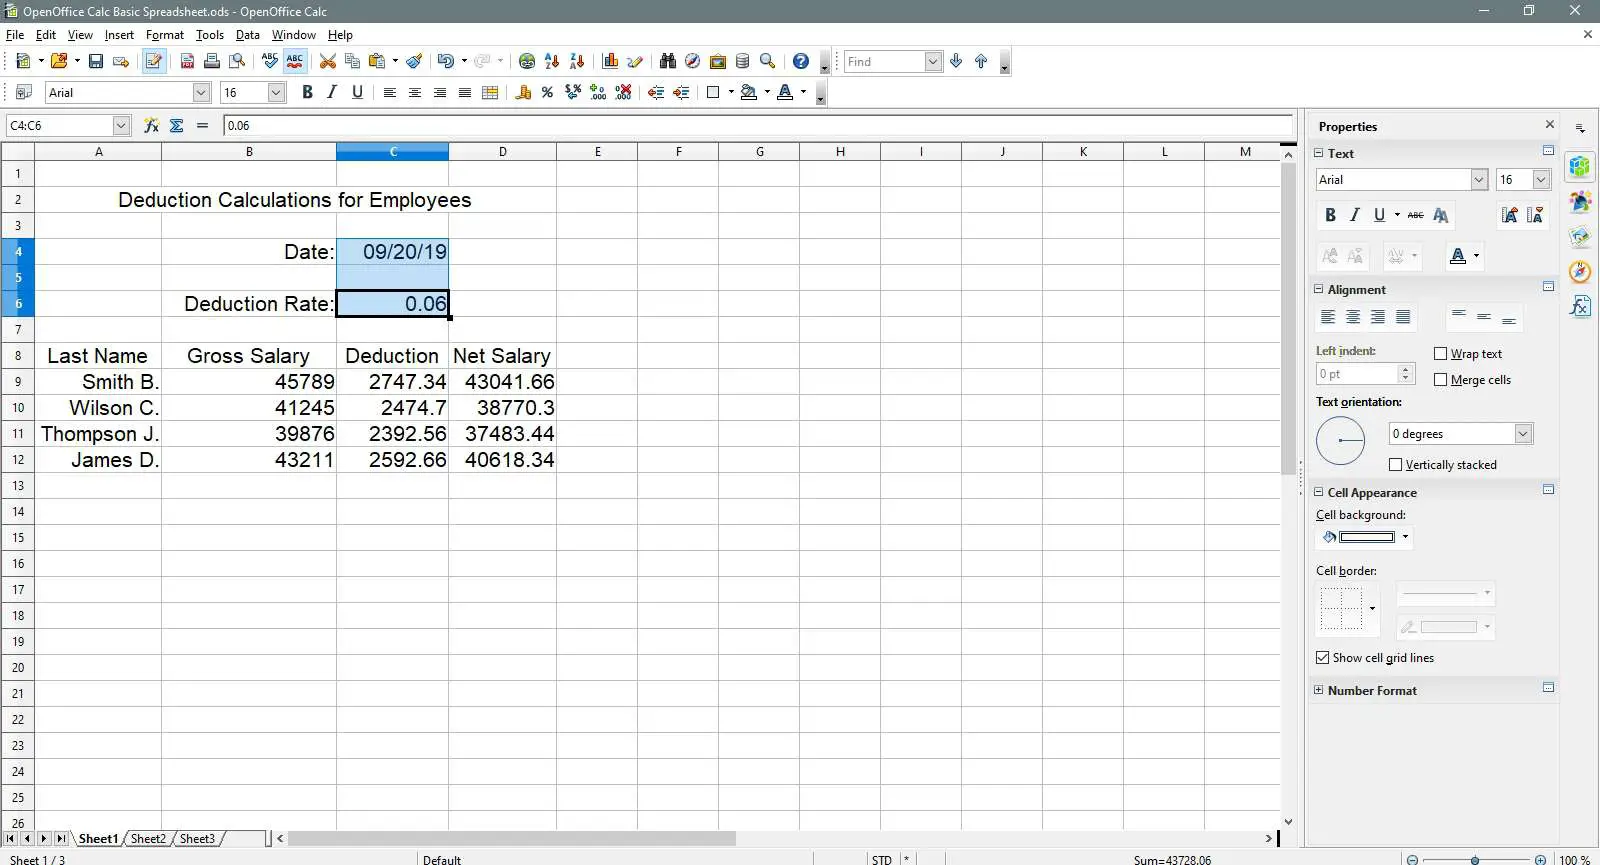 As células de data e taxa de dedução são destacadas no OpenOffice Calc.